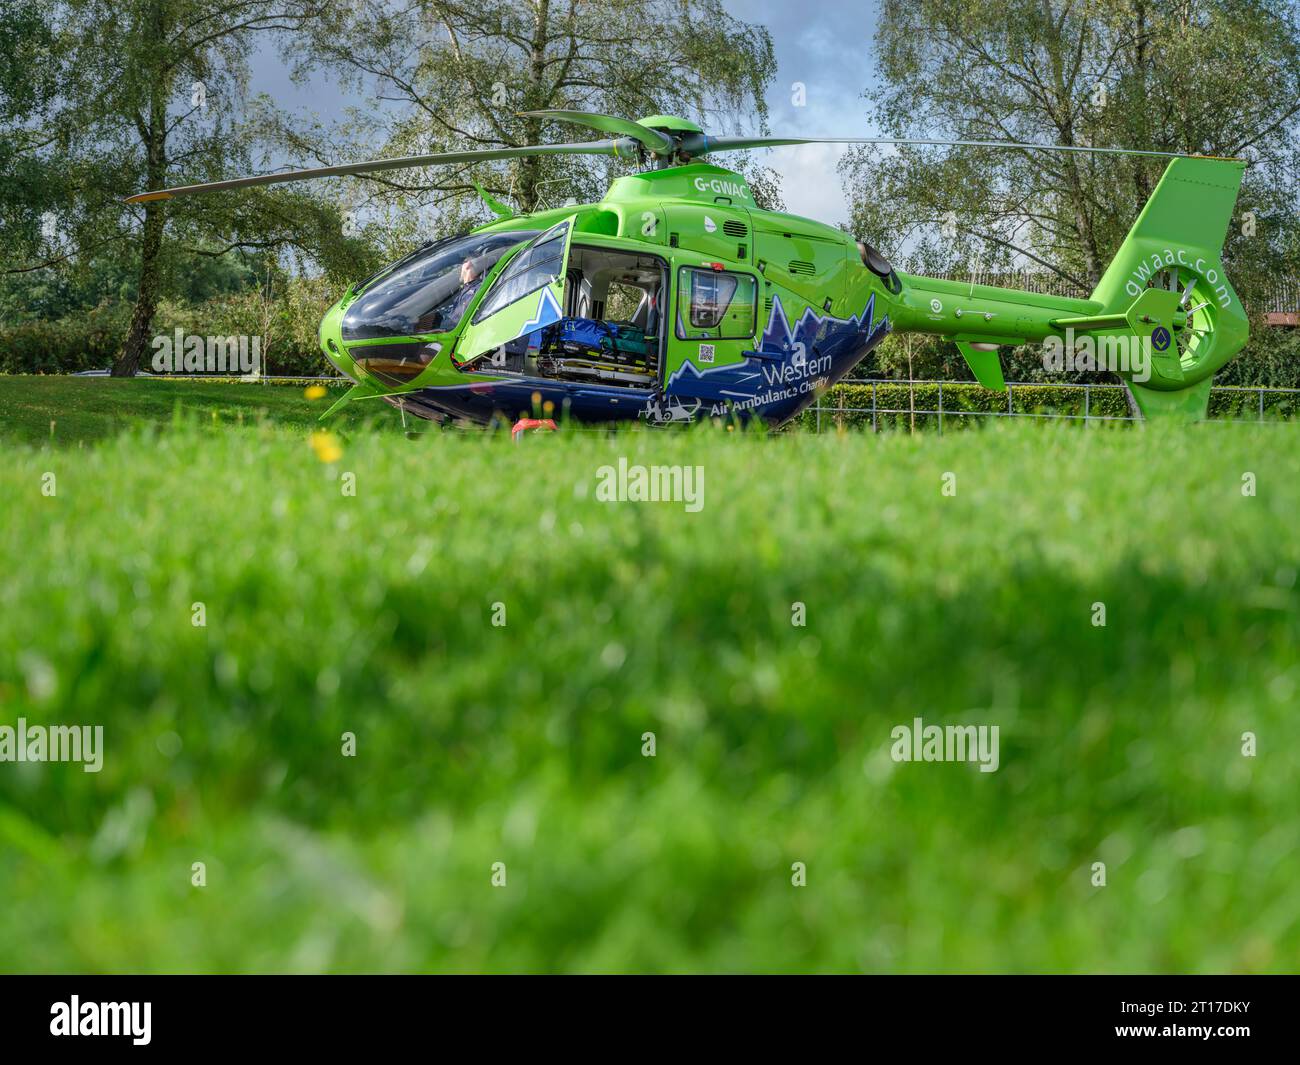 La Great Western Air Ambulance se prépare à décoller de l'extérieur de l'hôpital royal de Gloucester. L'hélicoptère vert citron et bleu vif, indicatif d'appel Hel Banque D'Images